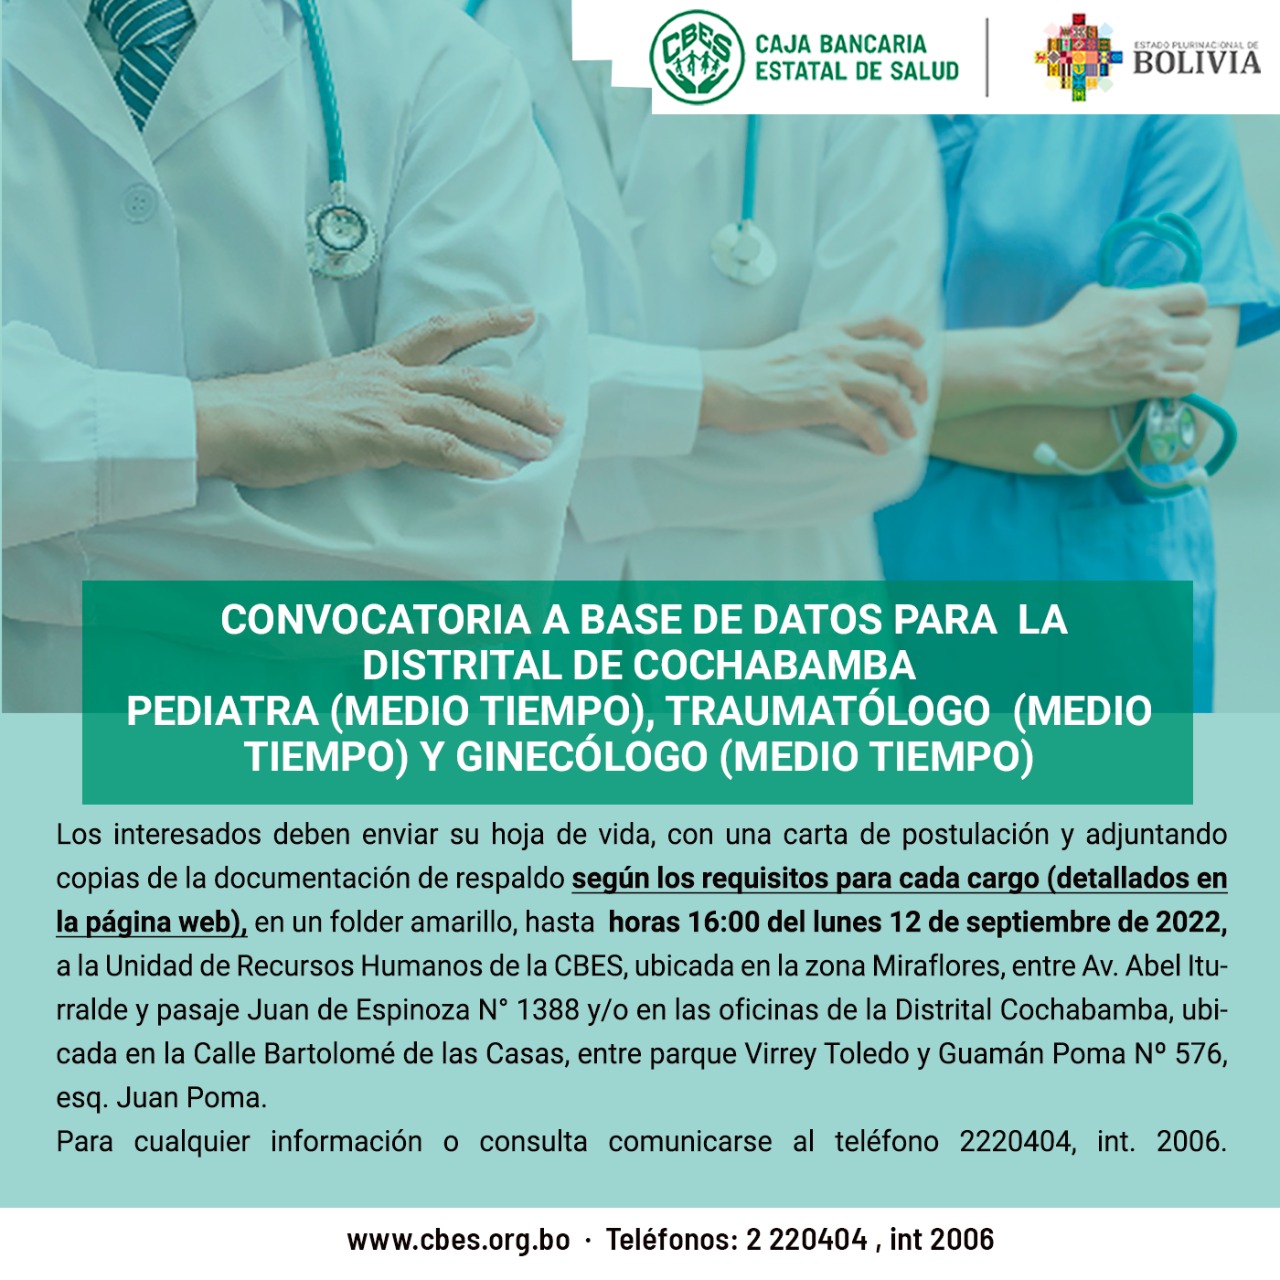 Convocatoria a base de datos para  la distrital de Cochabamba para los cargos de Pediatra (medio tiempo), Traumatólogo  (medio tiempo) y Ginecólogo (medio tiempo)